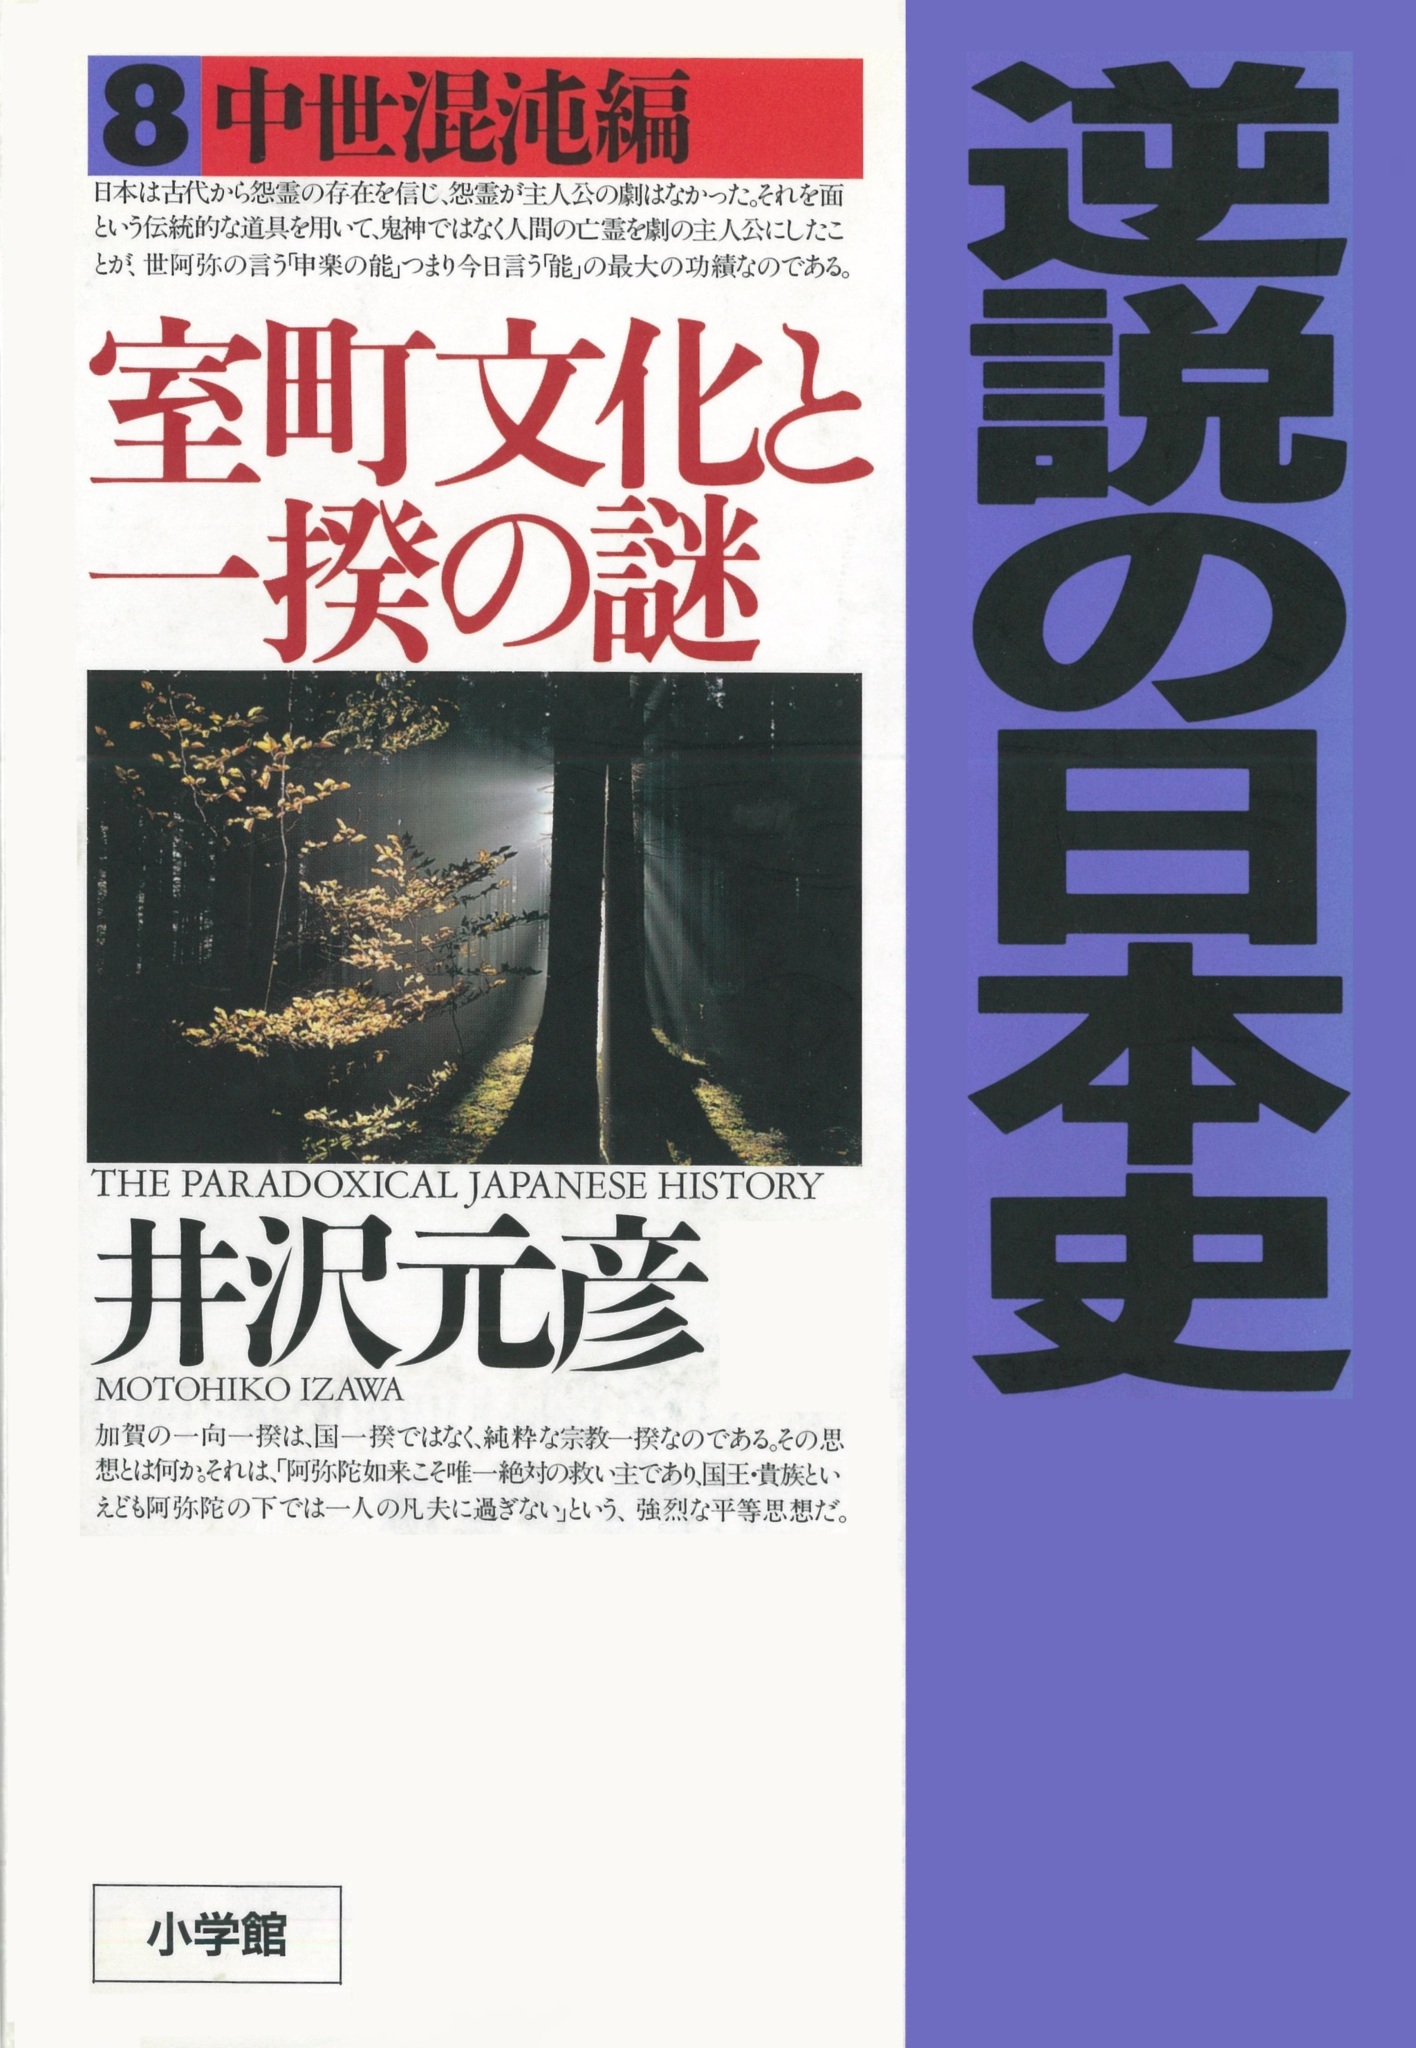 (井沢元彦)　#オーディオブック　逆説の日本史〈8〉中世混沌編　室町文化と一揆の謎　オーディオブック（旧ListenGo）で　ドワンゴジェイピー　を聴こう